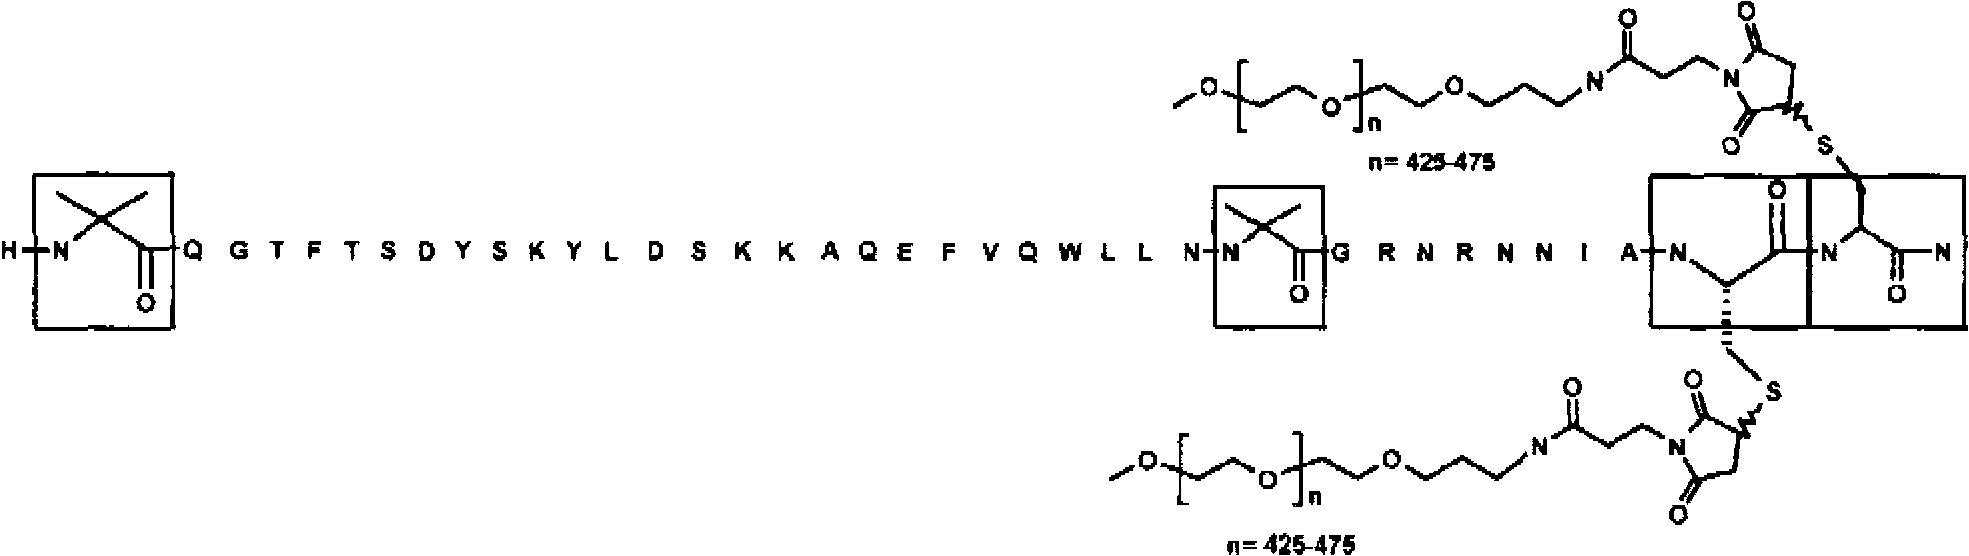 Oxyntomodulin peptide analogue